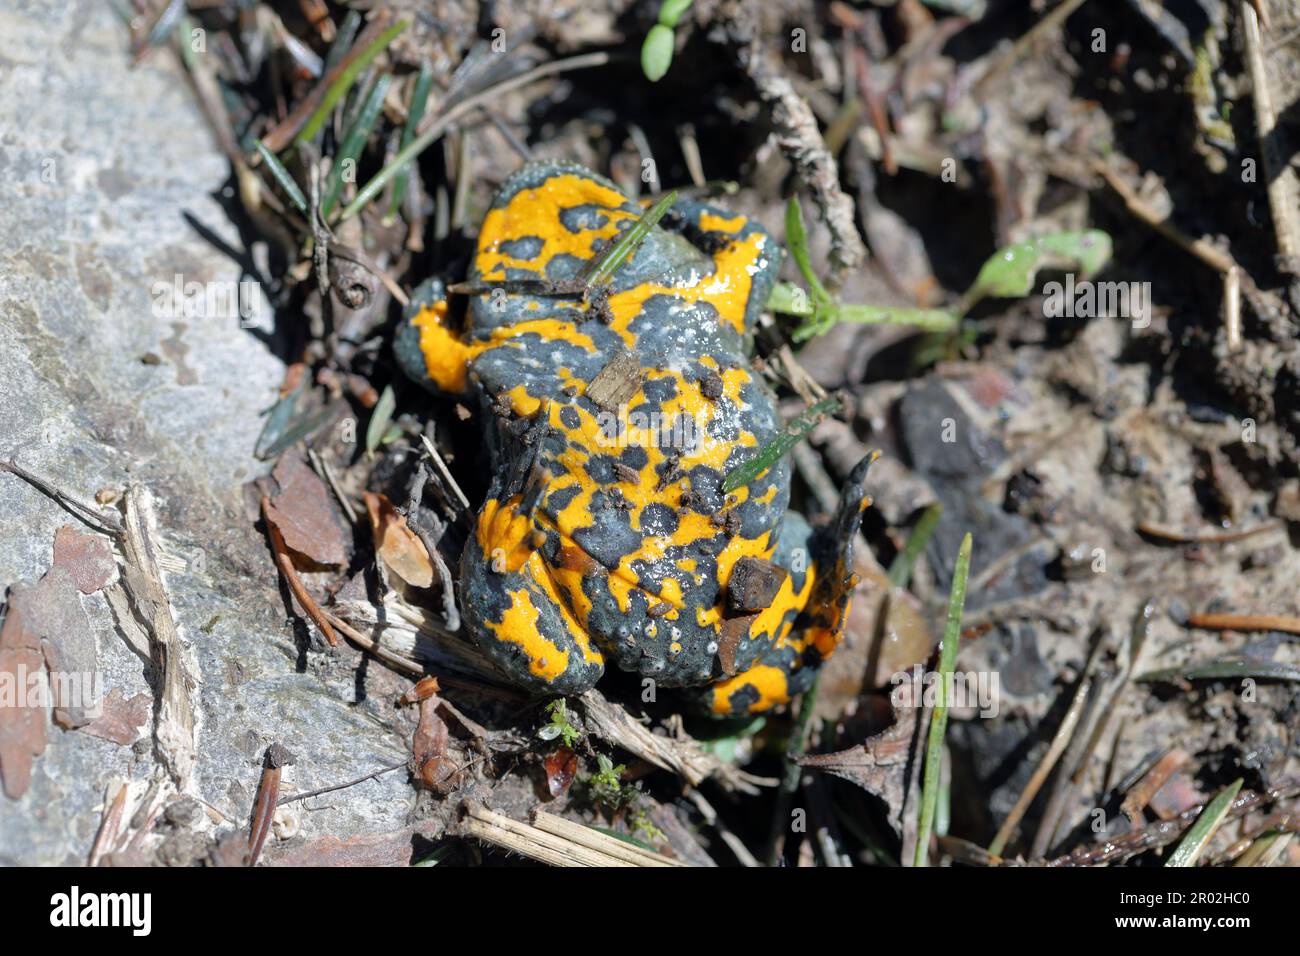 Gelbbauchkröte, Bombina variegata. Seltene vom Aussterben bedrohte Amphibienarten. Stockfoto